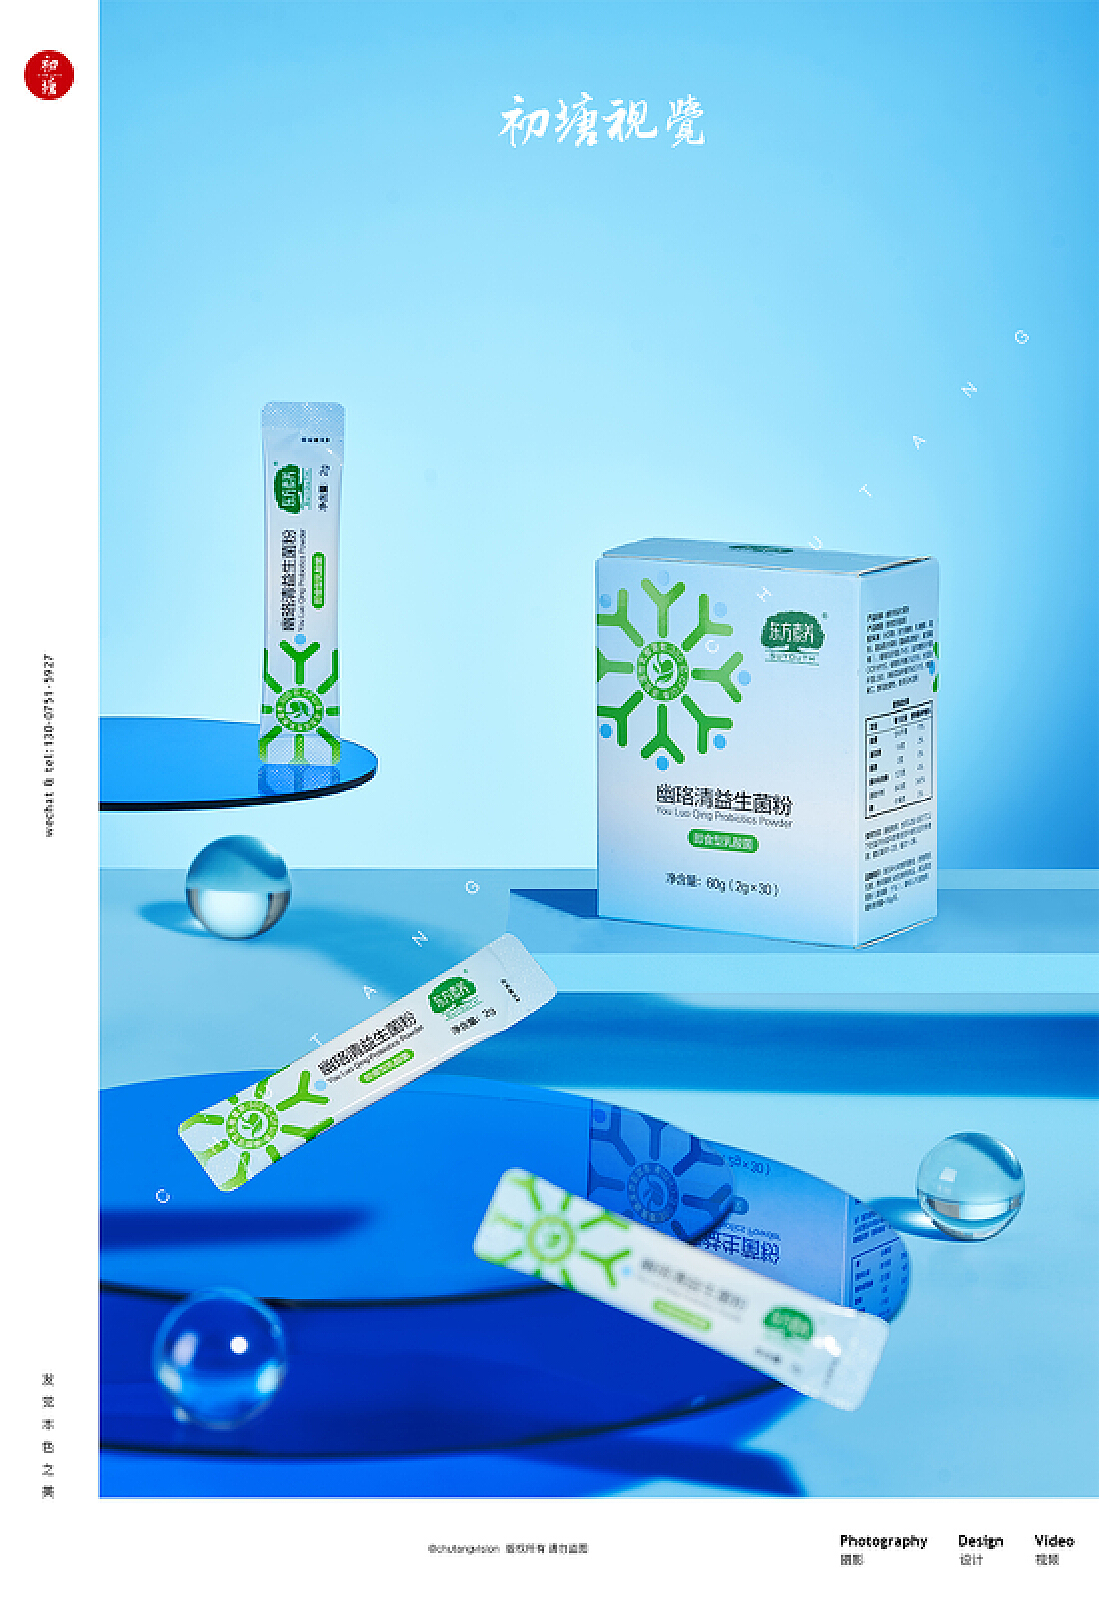 九道菌鲜低盐菌粉系列设计_食品包装设计公司,广州北斗设计有限公司